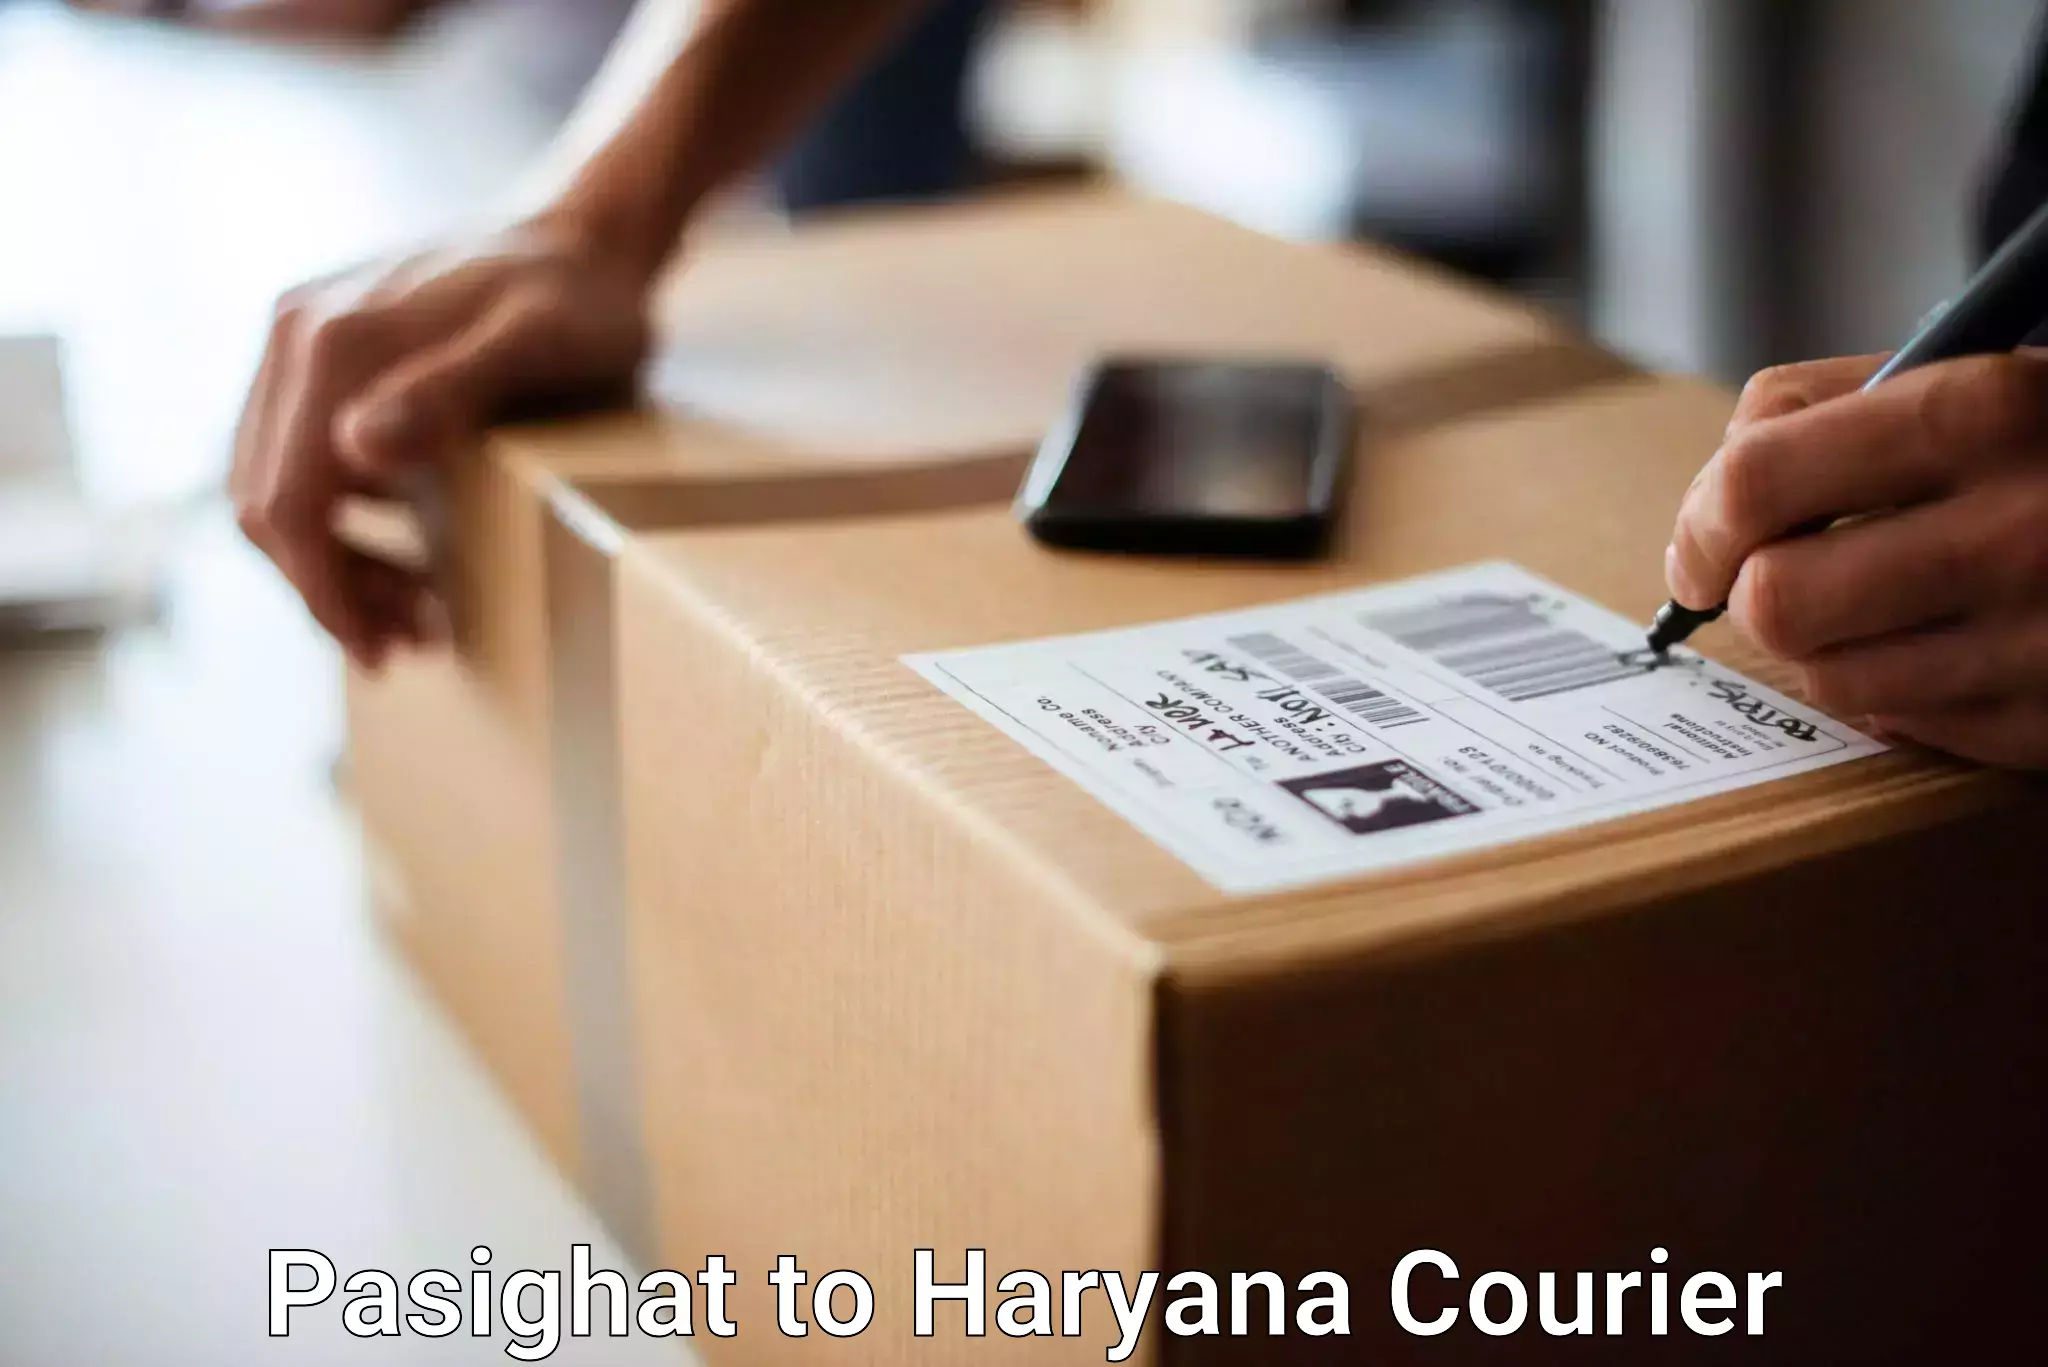 Global baggage shipping Pasighat to NCR Haryana